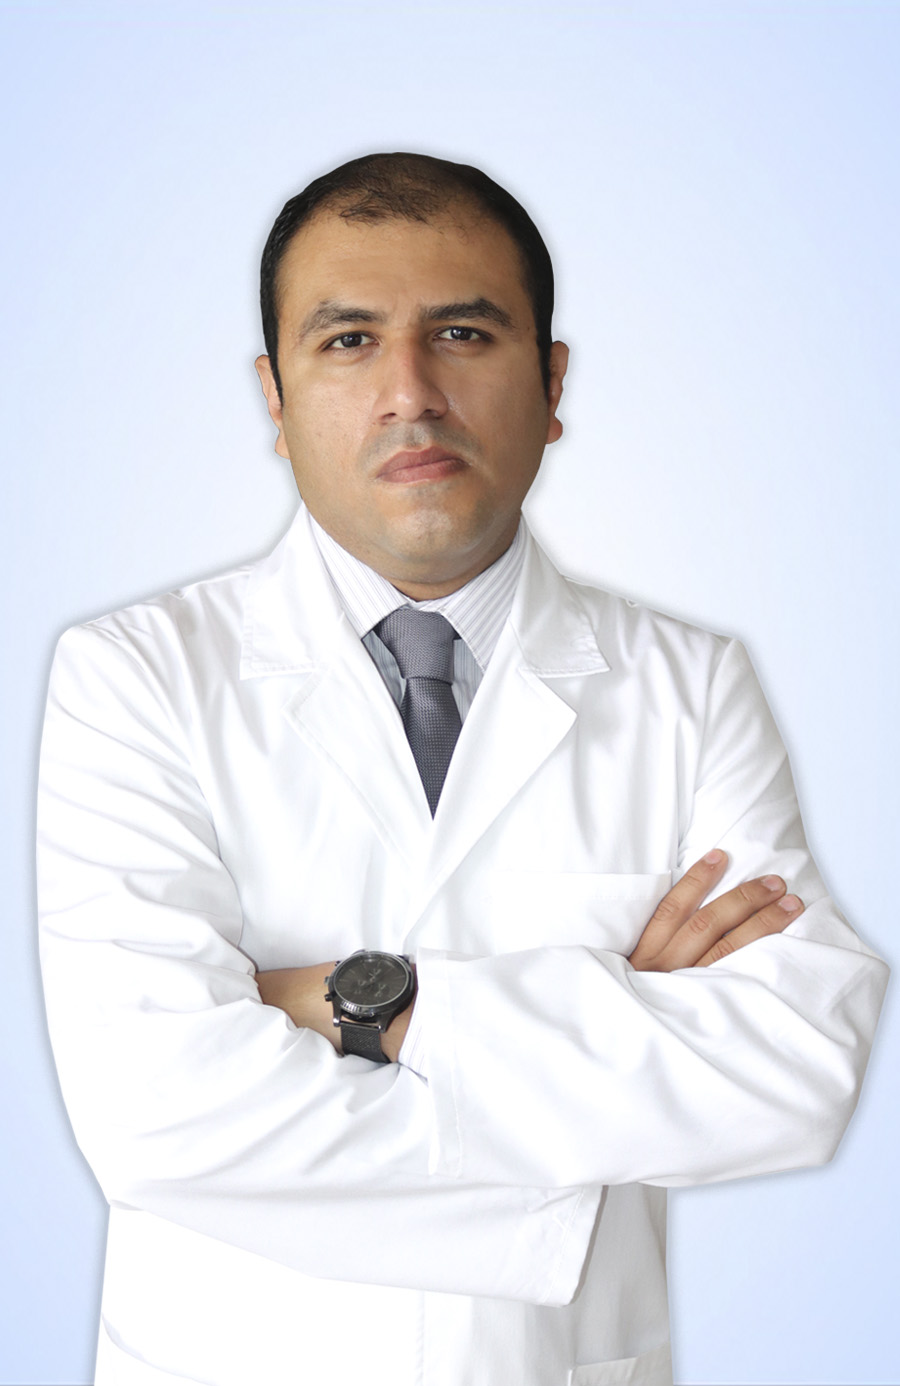 DR. BALCAZAR